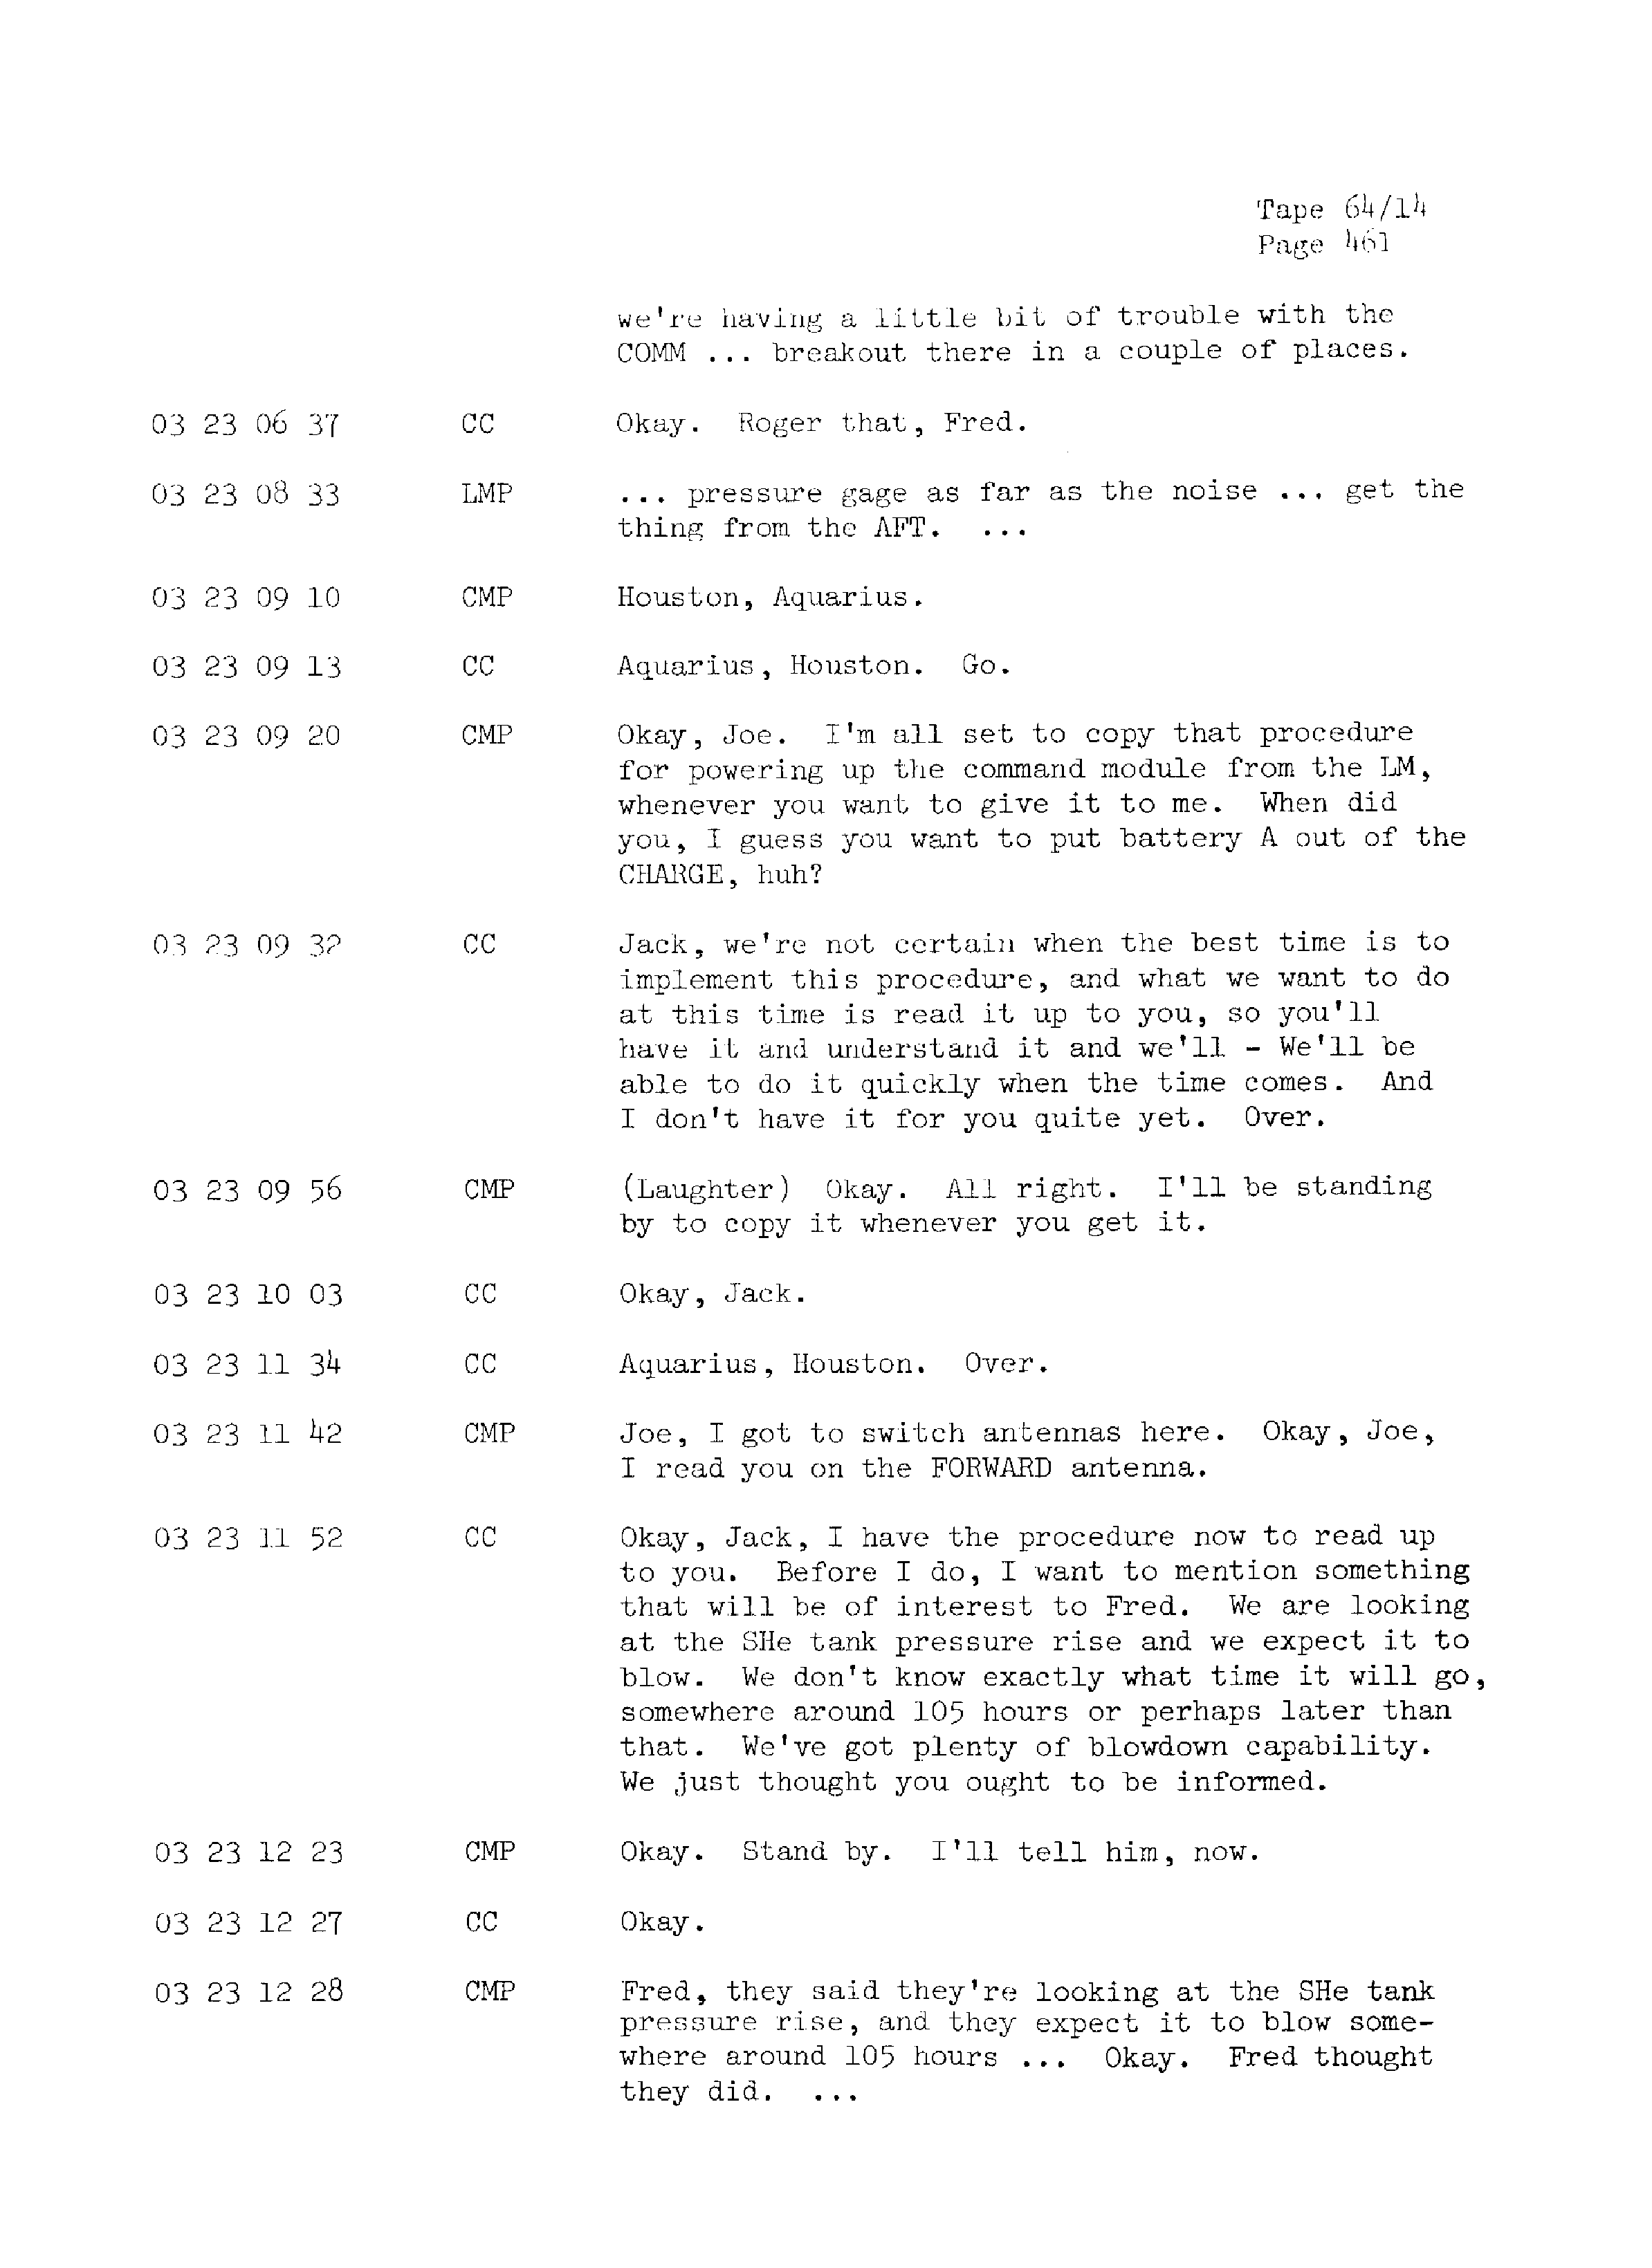 Page 468 of Apollo 13’s original transcript